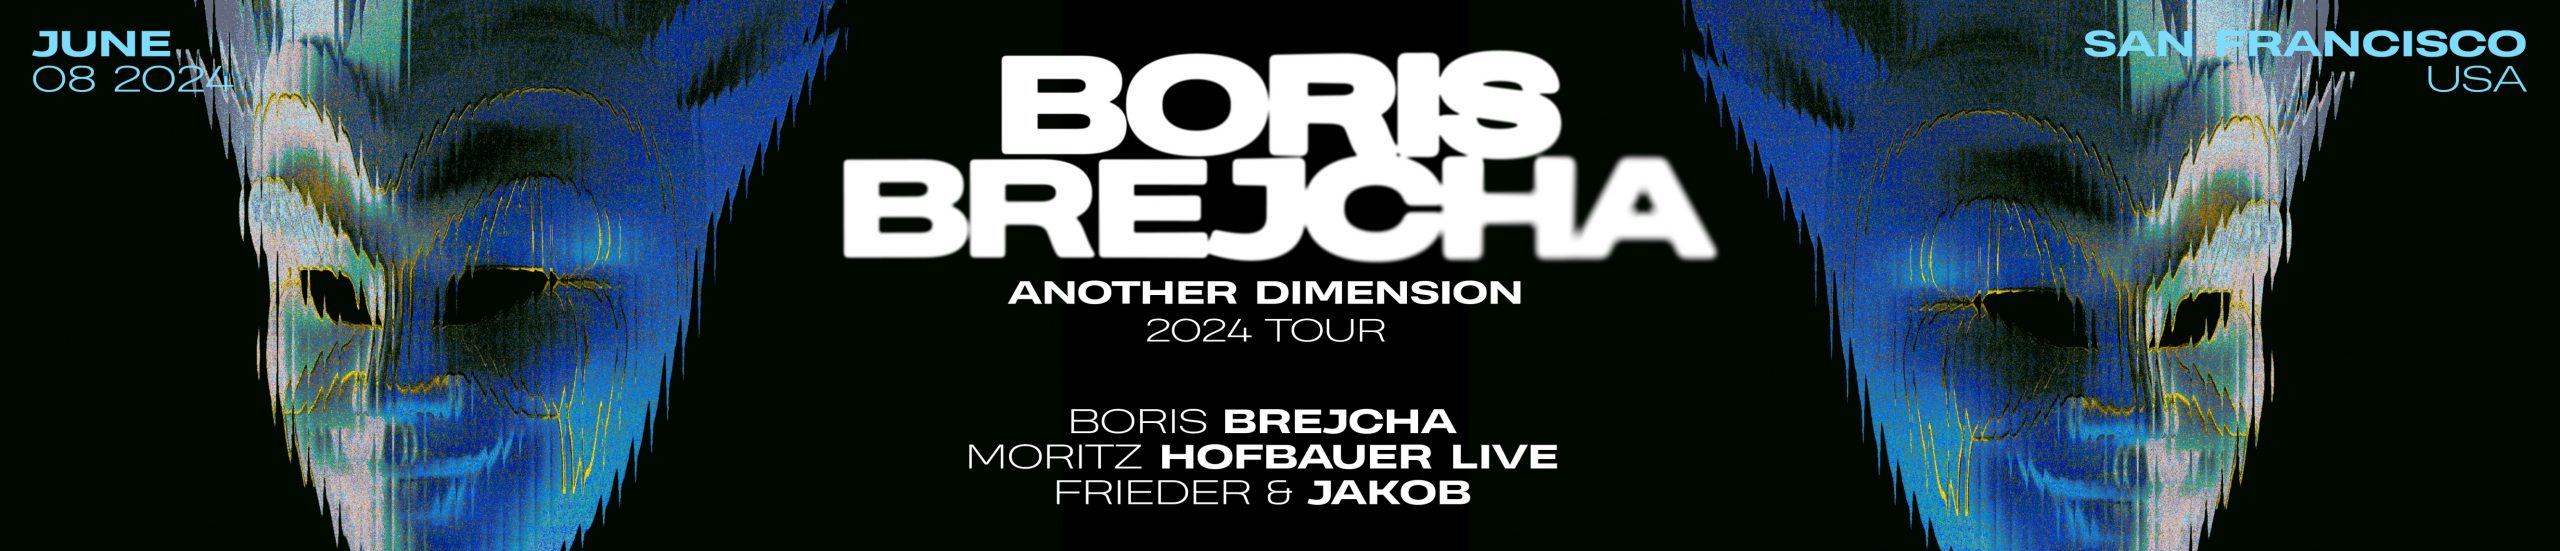 Boris Brejcha in SF – Another Dimension Tour 2024